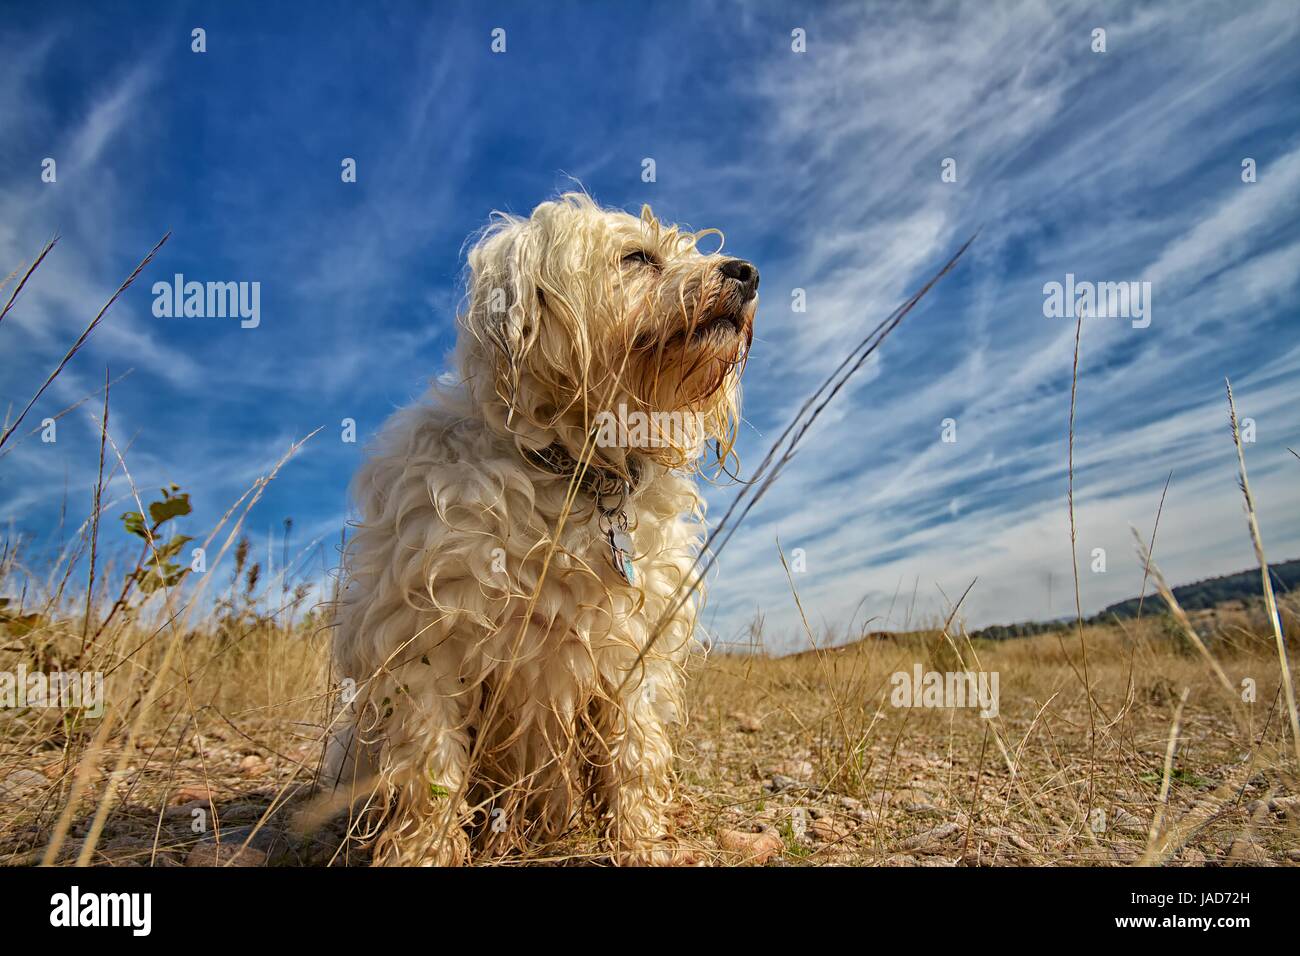 Ein Kleiner aber sehr stolzer Junger Hund sitzt vor einem Blauen Himmel mit Wolken, das ganze mit einem Weitwinkel Objektiv eingefangen. Stock Photo